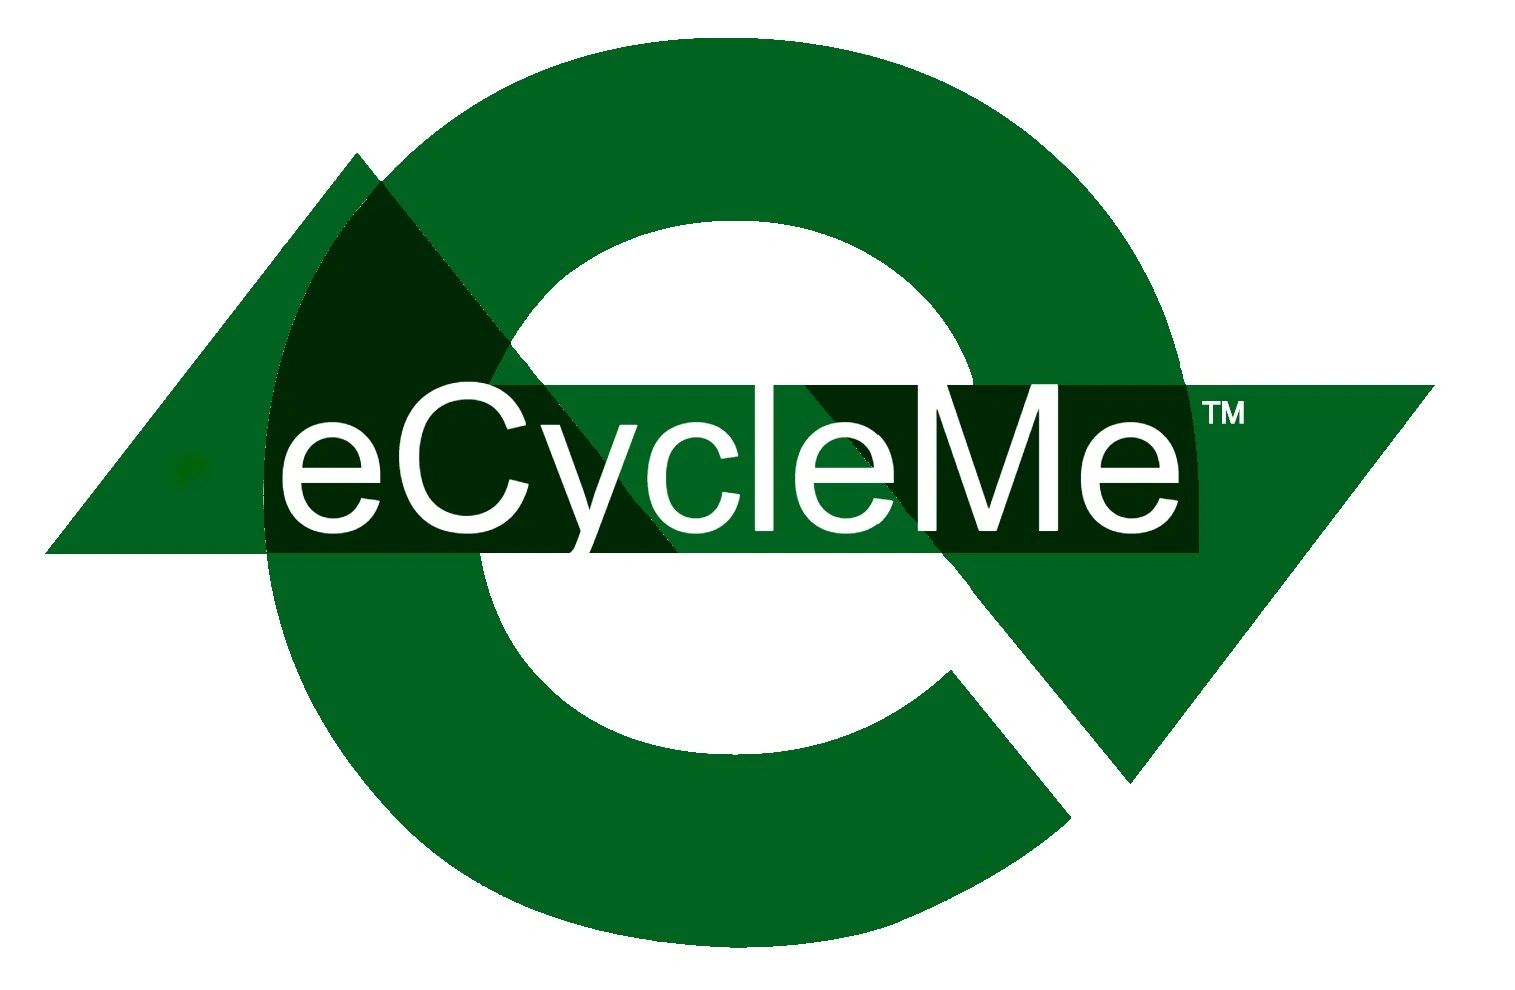 (c) Ecycleme.com